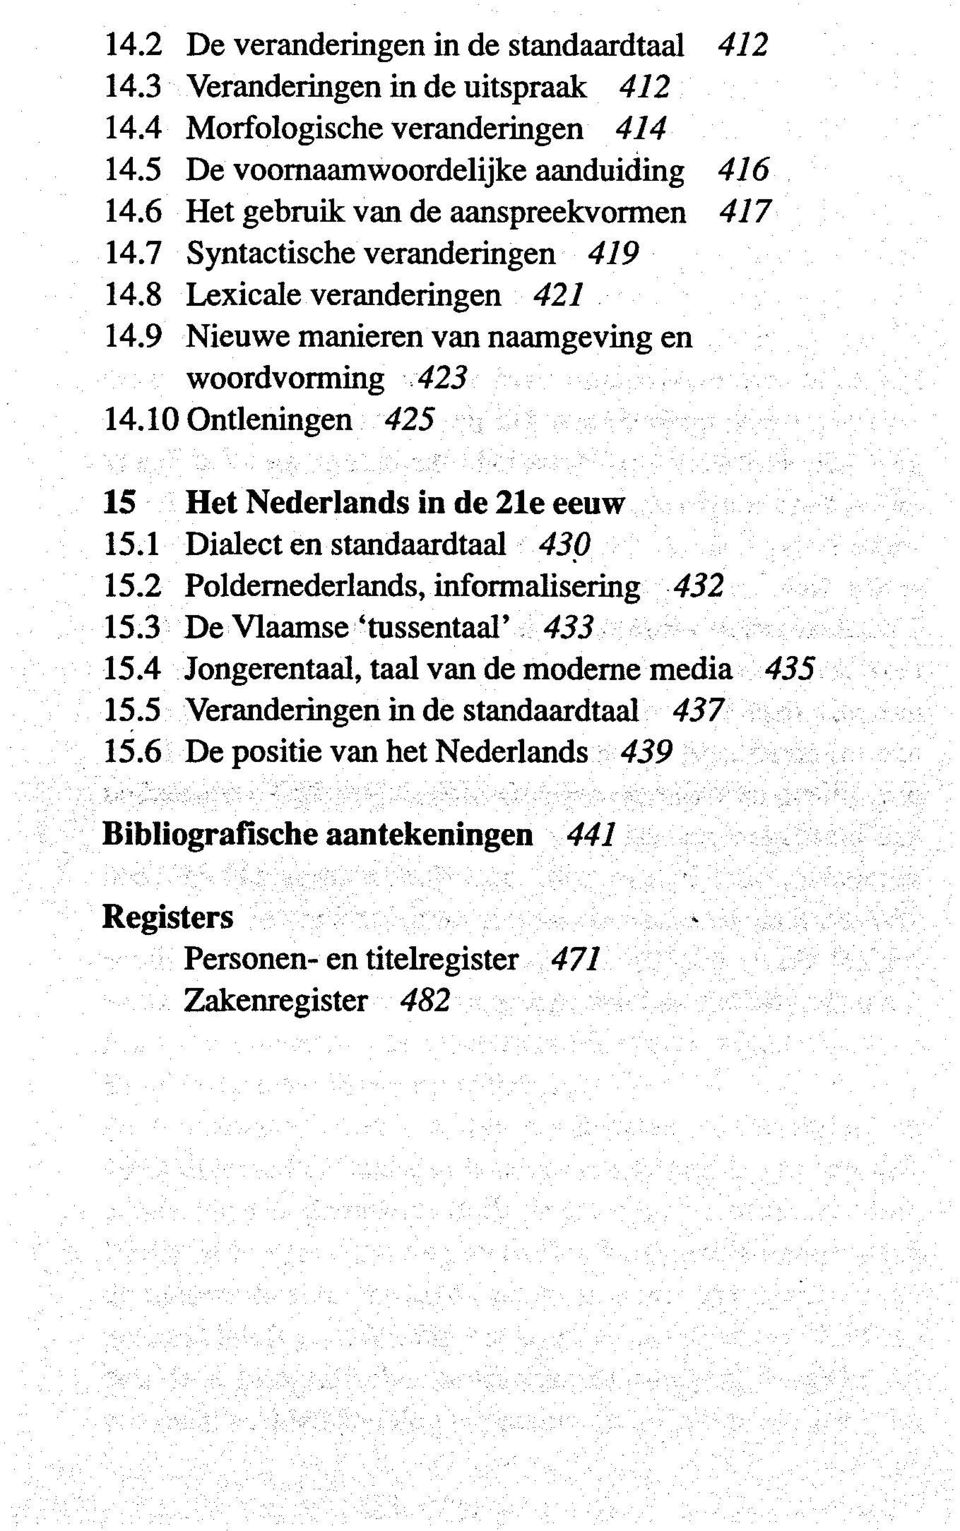 10 Ontleningen 425 15 Het Nederlands in de 21e eeuw 15.1 Dialect en standaardtaal 430 15.2 Poldernederlands, informalisering 432 15.3 De Vlaamse 'tussentaal' 433 15.